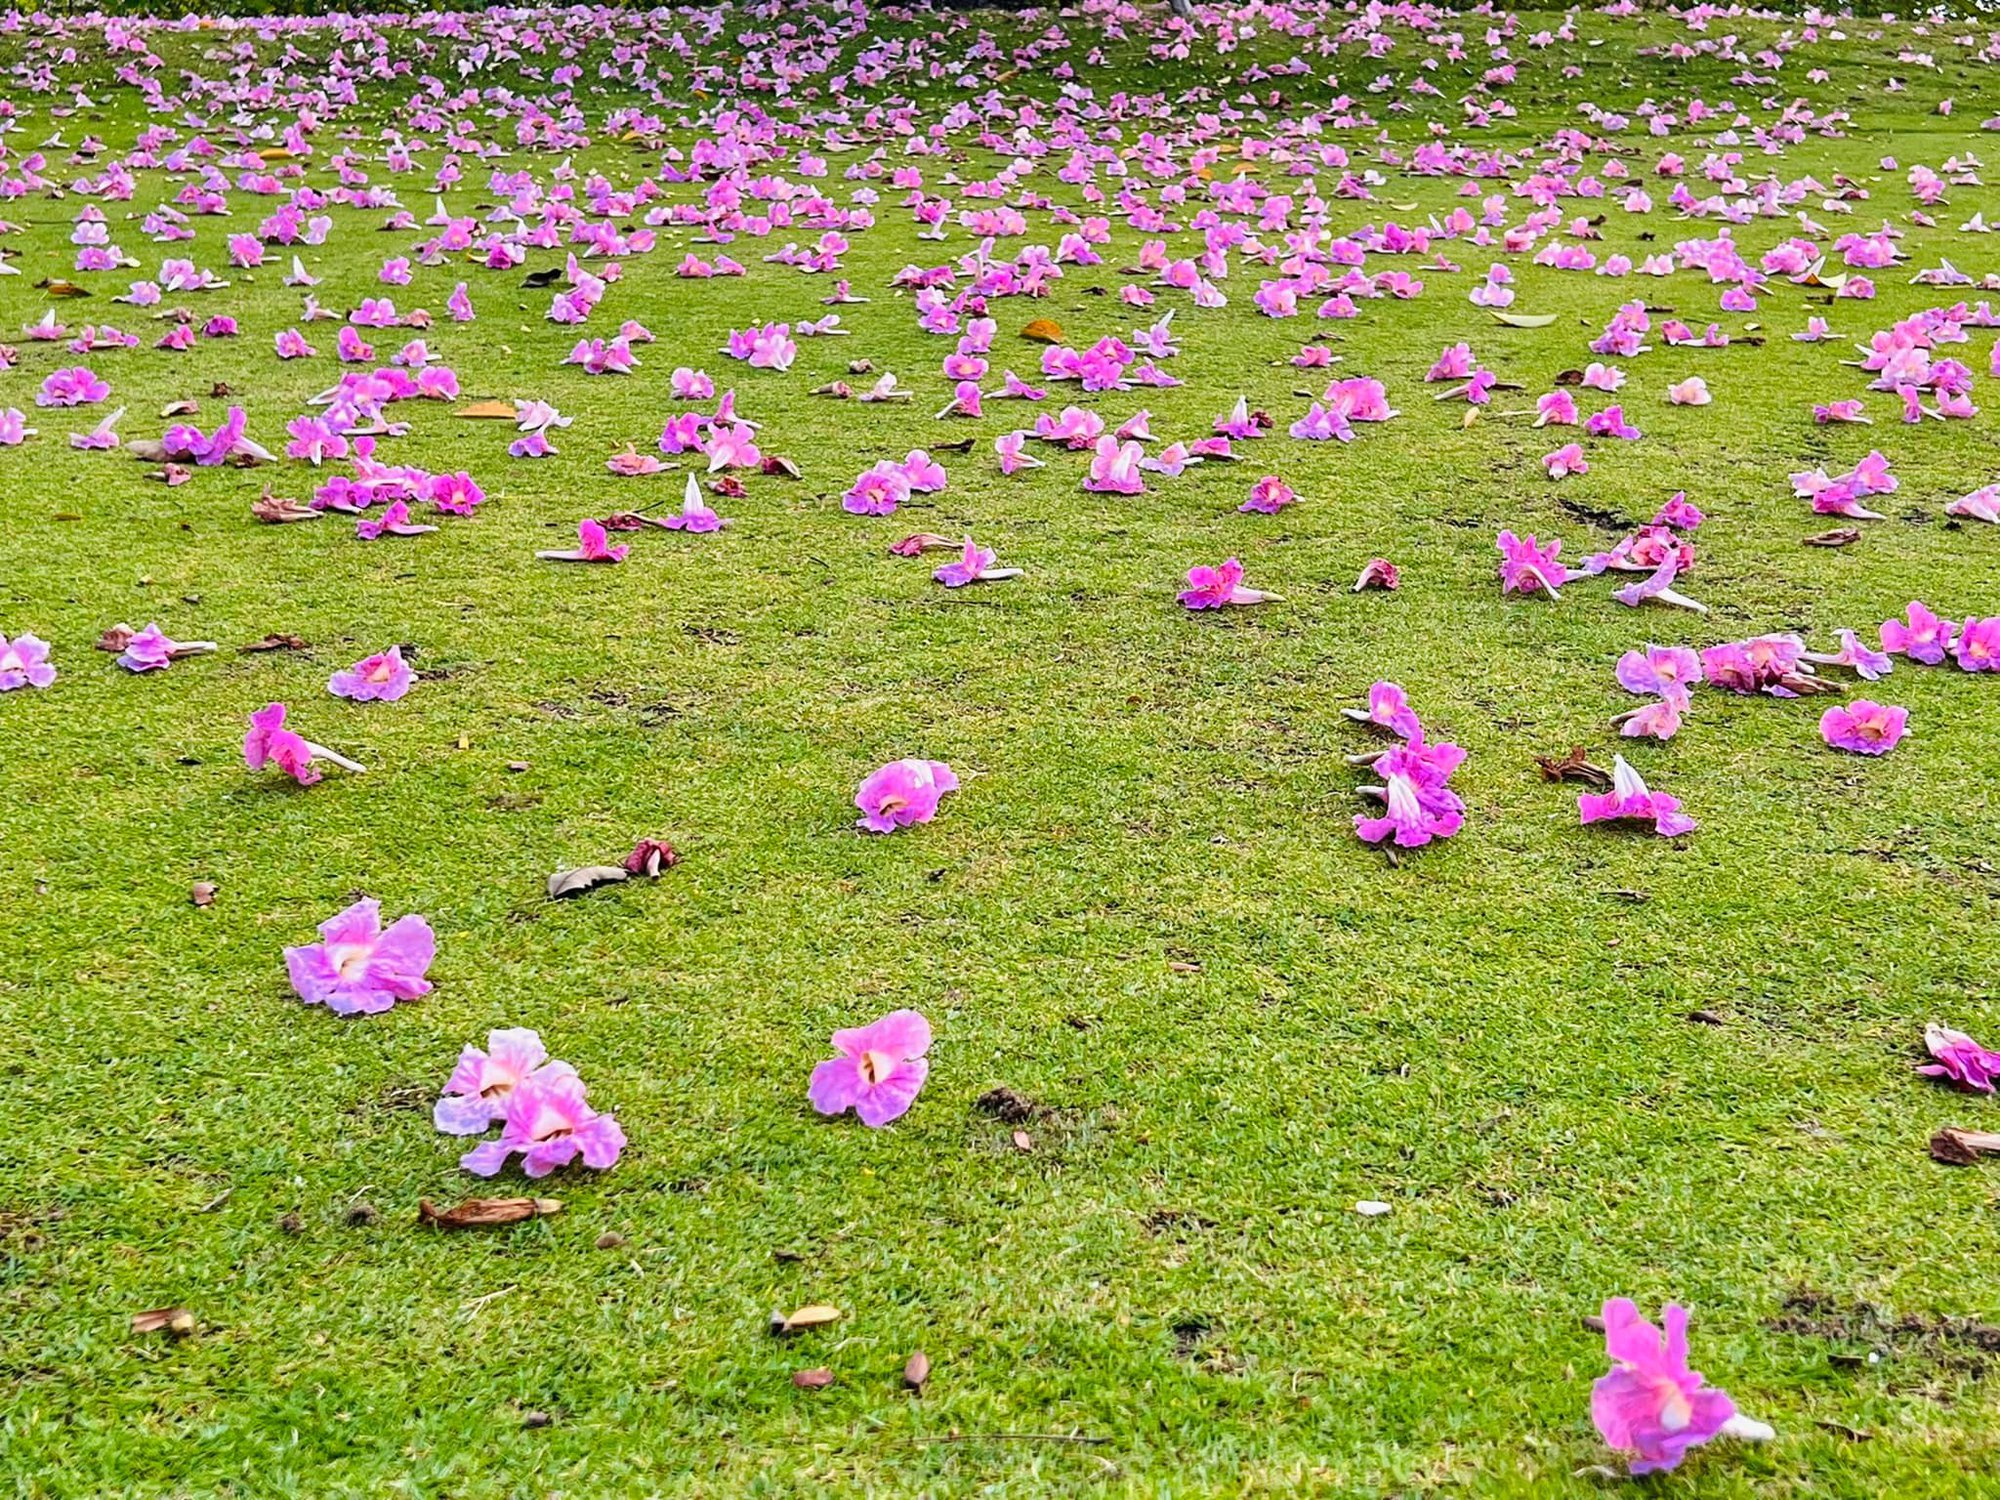 Hoa kèn hồng những ngày cuối mùa làm nao lòng người Sài Gòn - Ảnh 12.